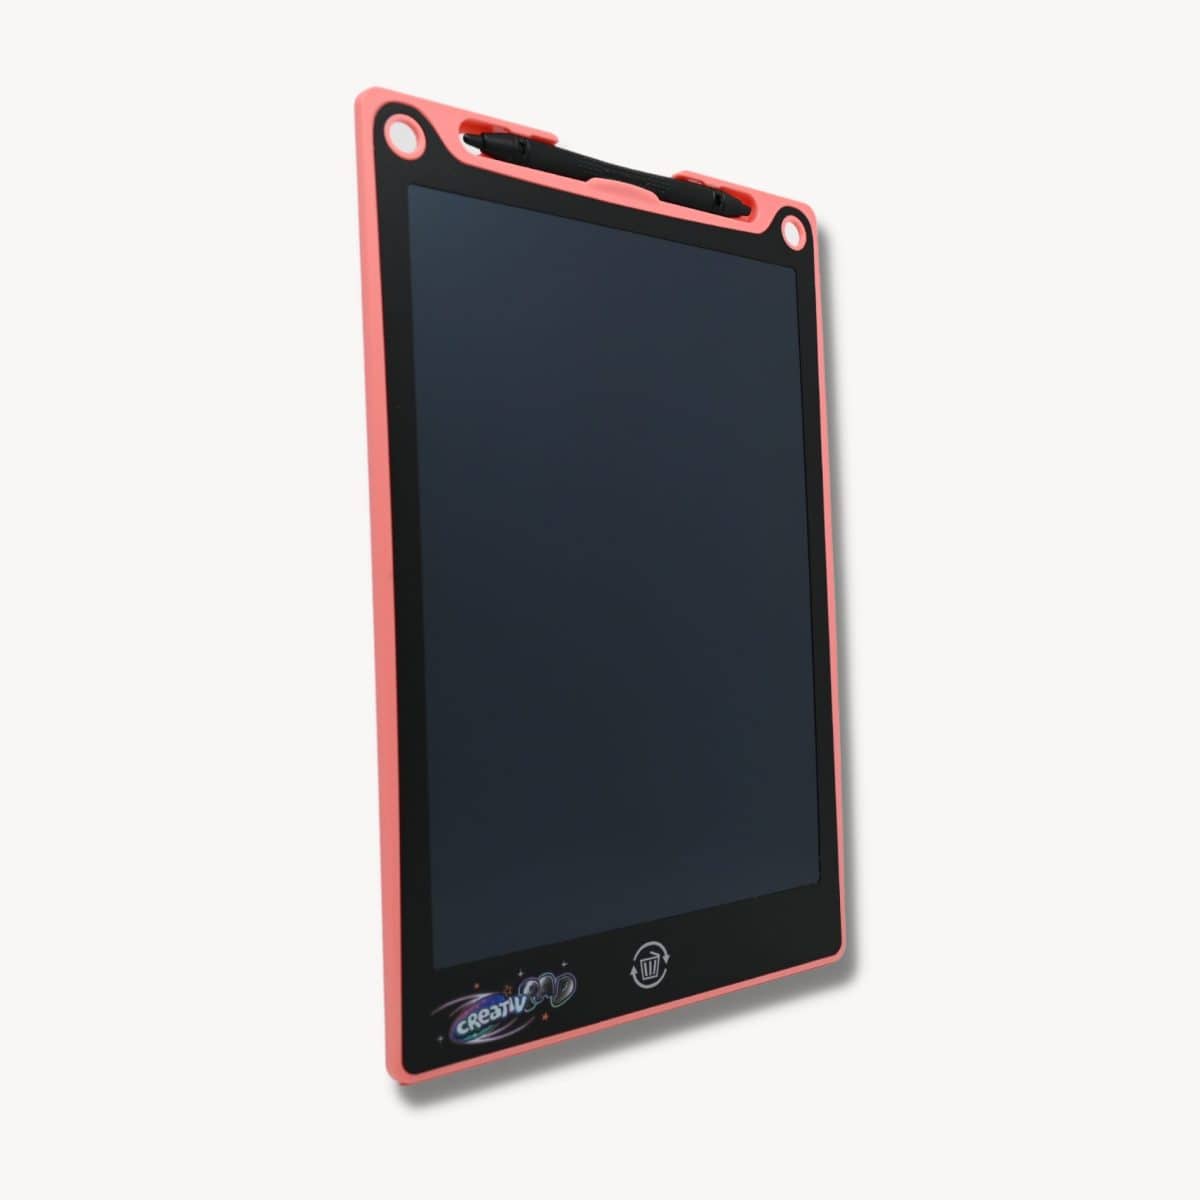 Richgv Tablette d'écriture LCD 12 Pouces,Tablette LCD Dessin Enfant avec  Bouton de Suppression,Ardoise Magique pour Enfant Adulte,Noir Tablette